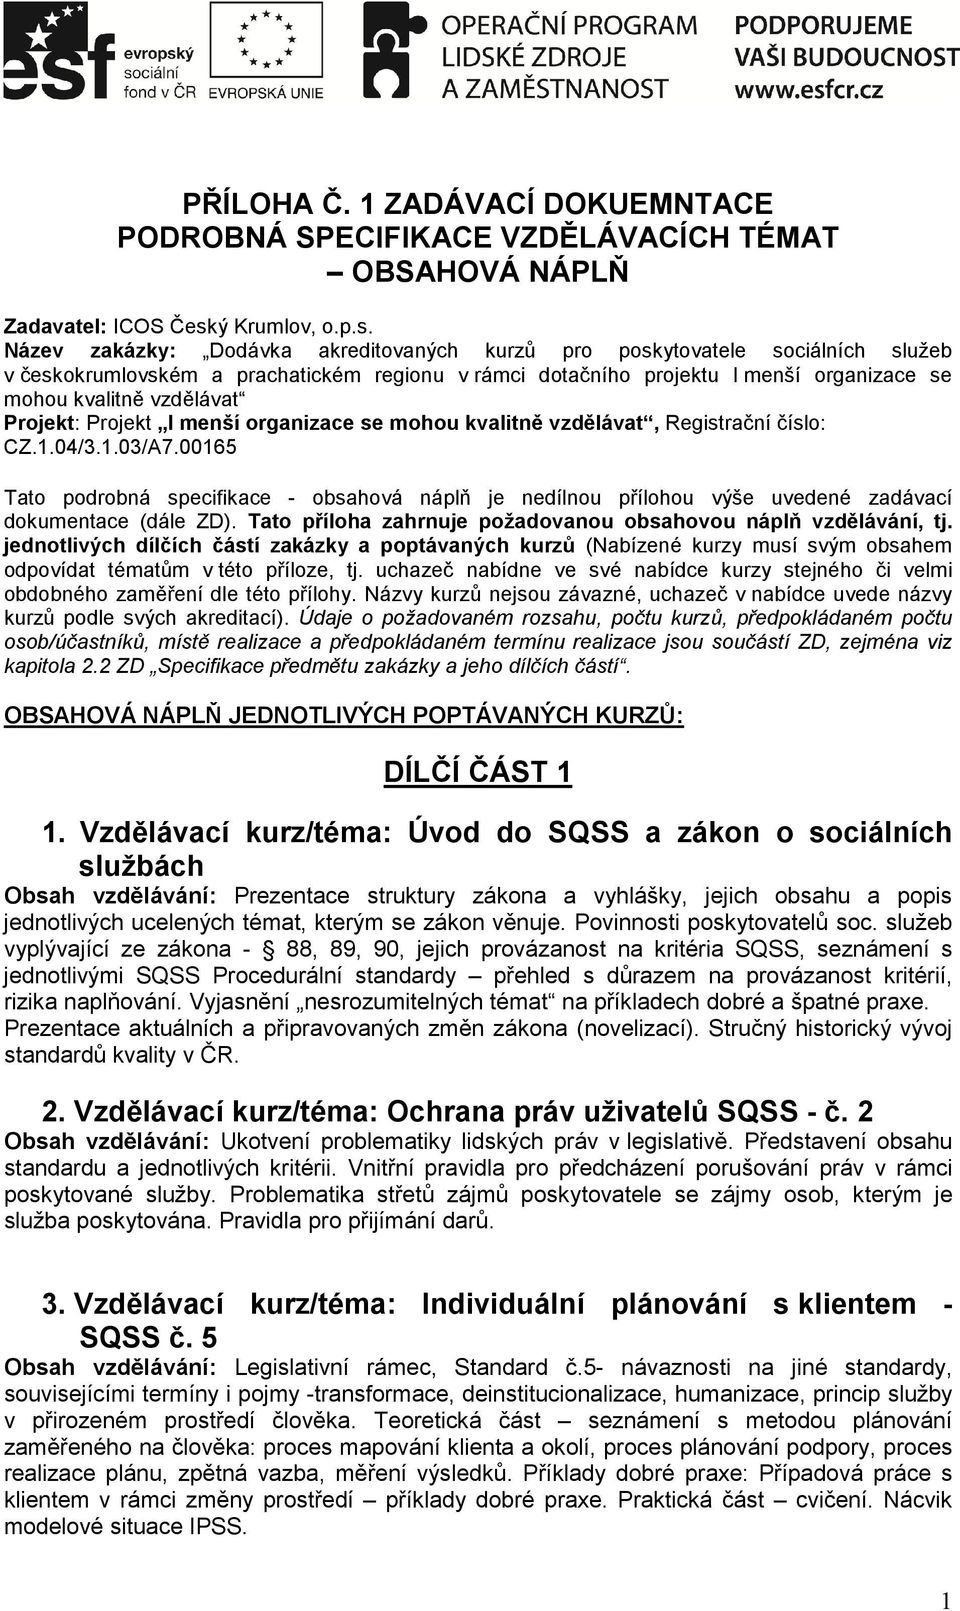 Název zakázky: Dodávka akreditovaných kurzů pro poskytovatele sociálních služeb v českokrumlovském a prachatickém regionu v rámci dotačního projektu I menší organizace se mohou kvalitně vzdělávat